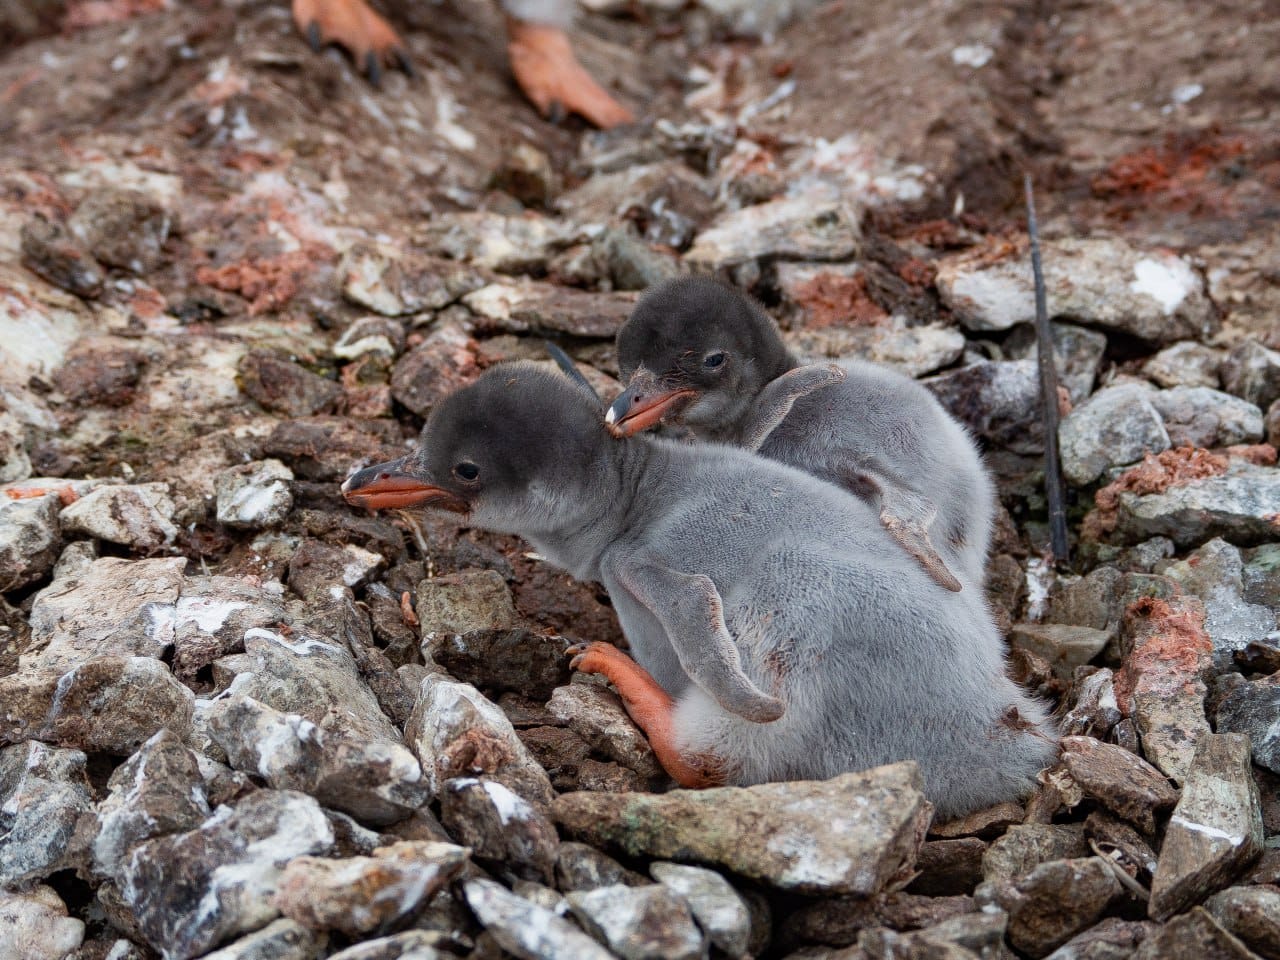 Біля станції “Академік Вернадський” з'явилися перші пташенята субантарктичних пінгвінів цього року